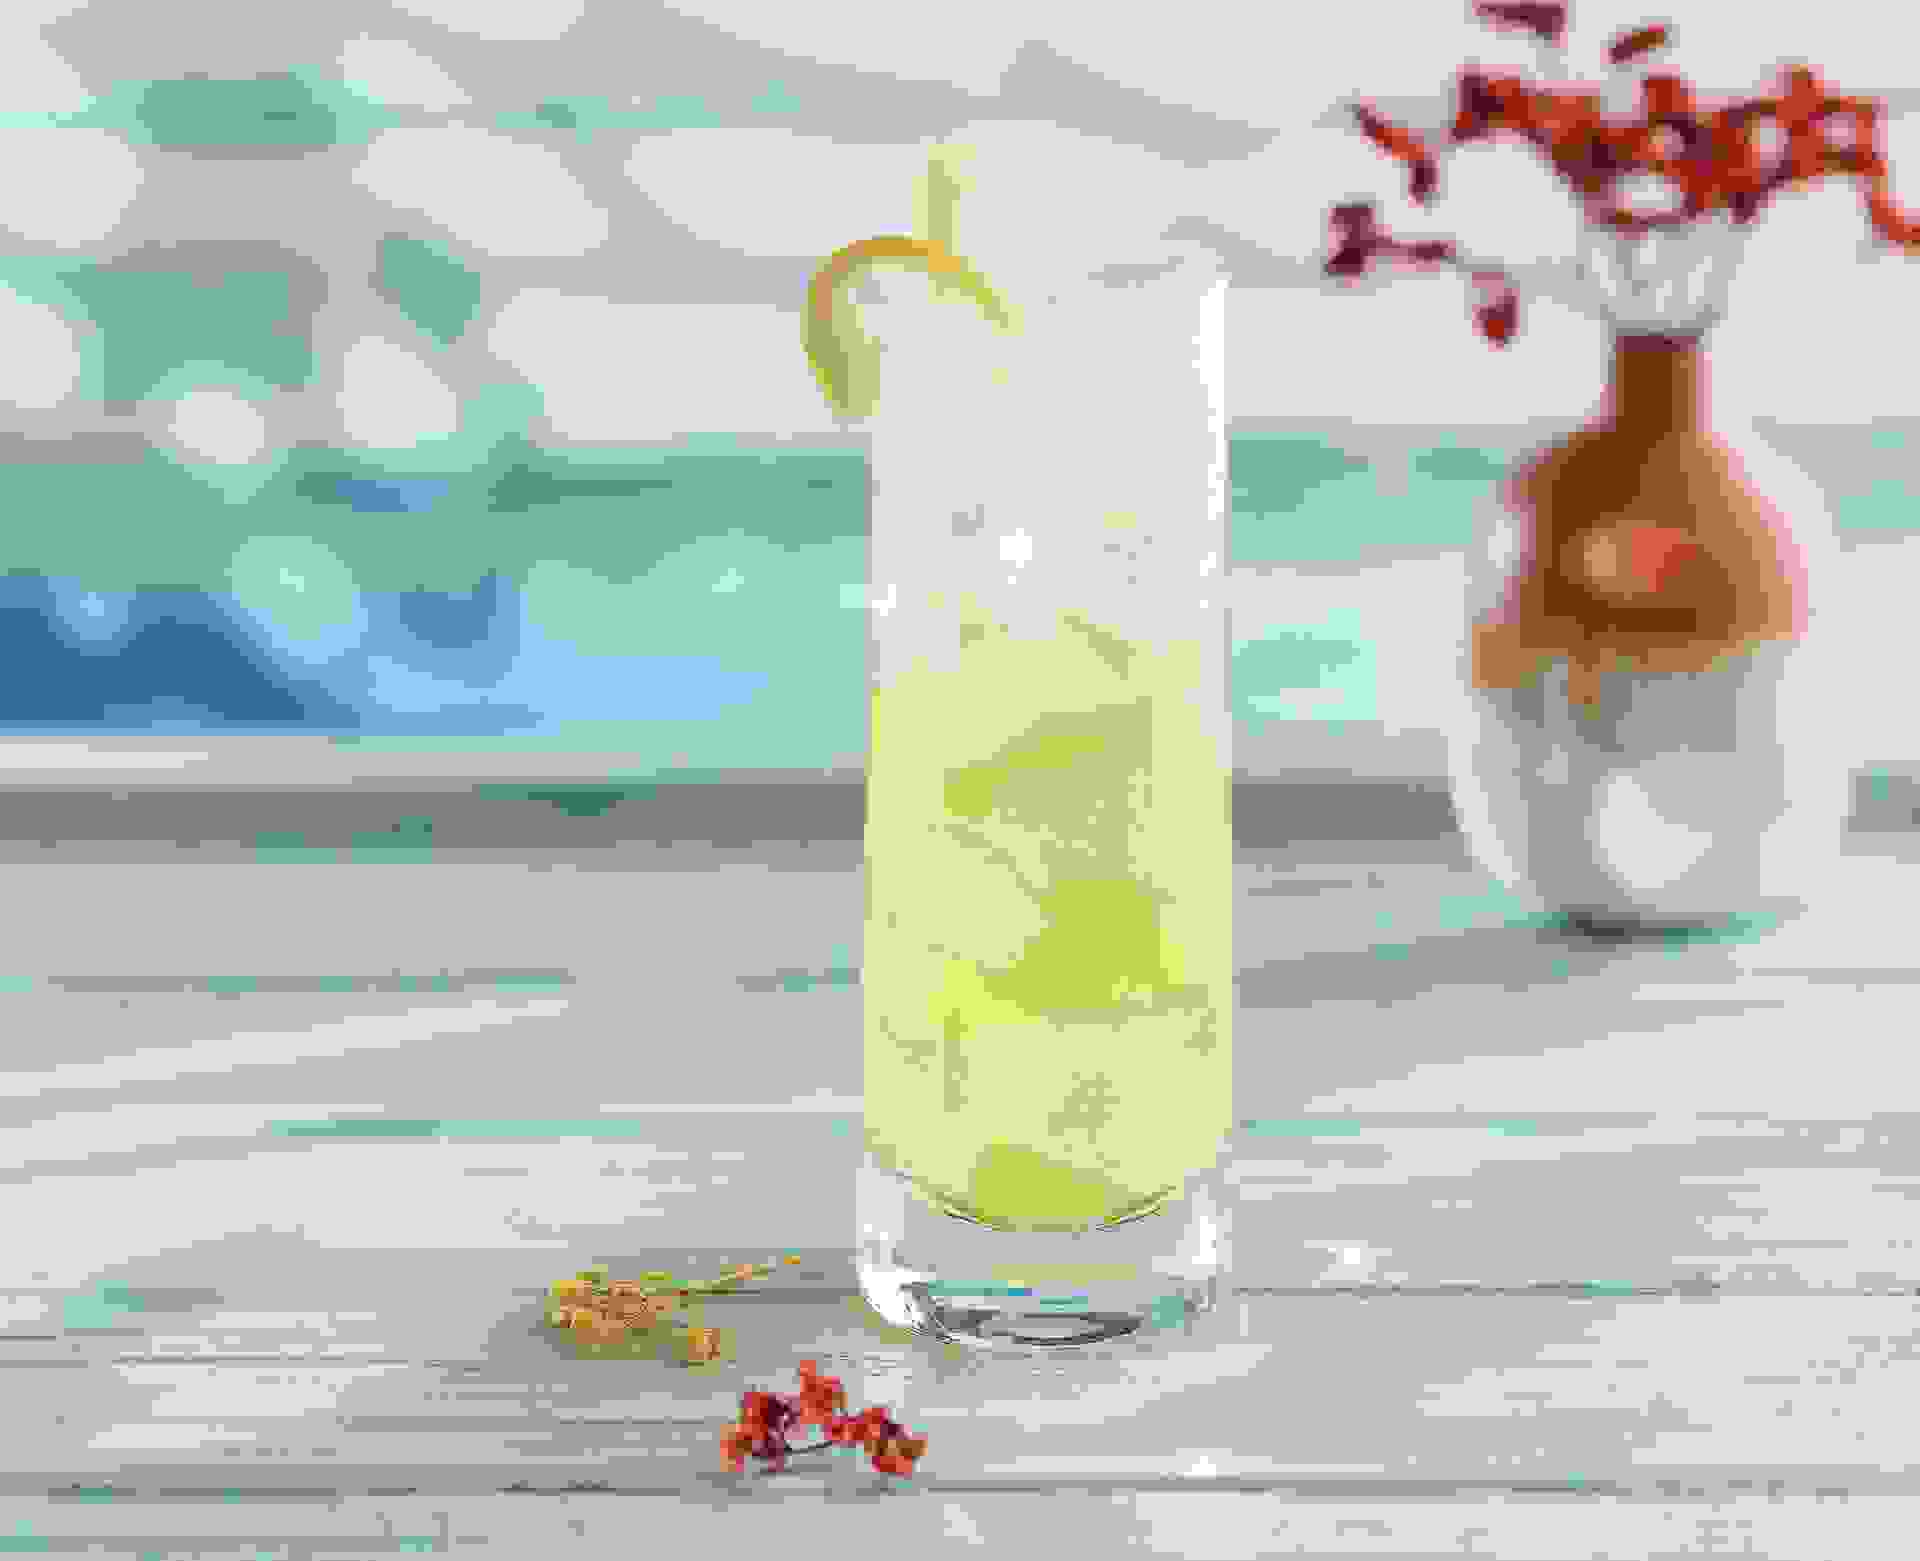 Cocktail Vert Tige réalisé avec le sirop Mojito, Kiwi, Pêche Teisseire, servi dans un verre.